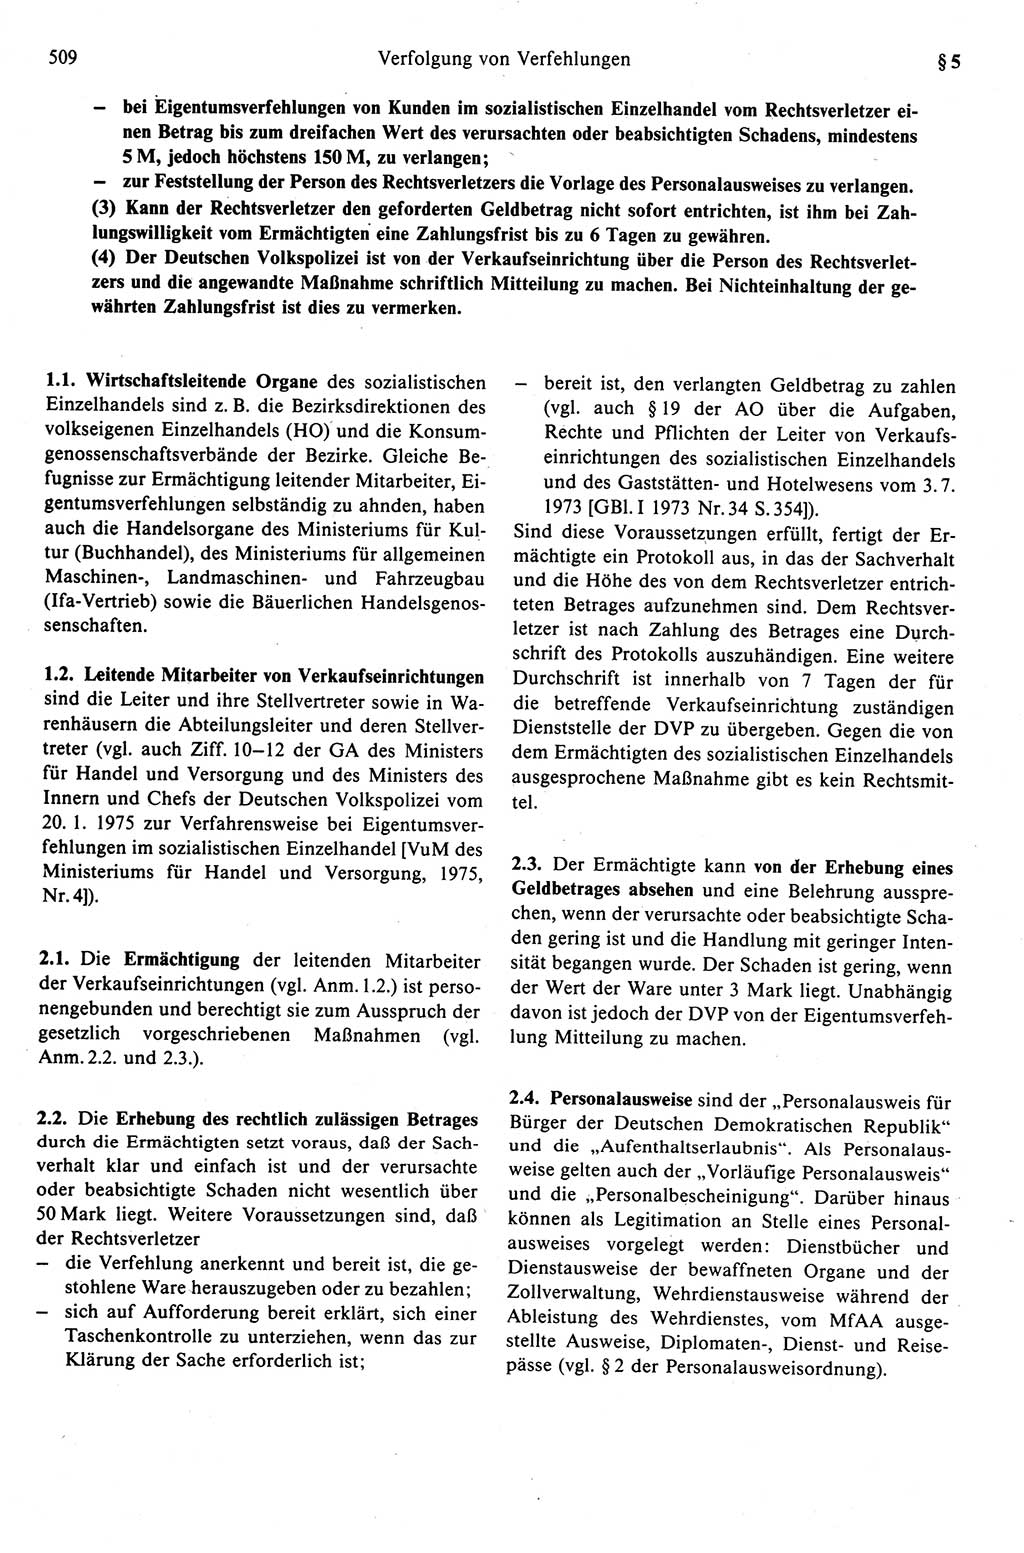 Strafprozeßrecht der DDR (Deutsche Demokratische Republik), Kommentar zur Strafprozeßordnung (StPO) 1989, Seite 509 (Strafprozeßr. DDR Komm. StPO 1989, S. 509)